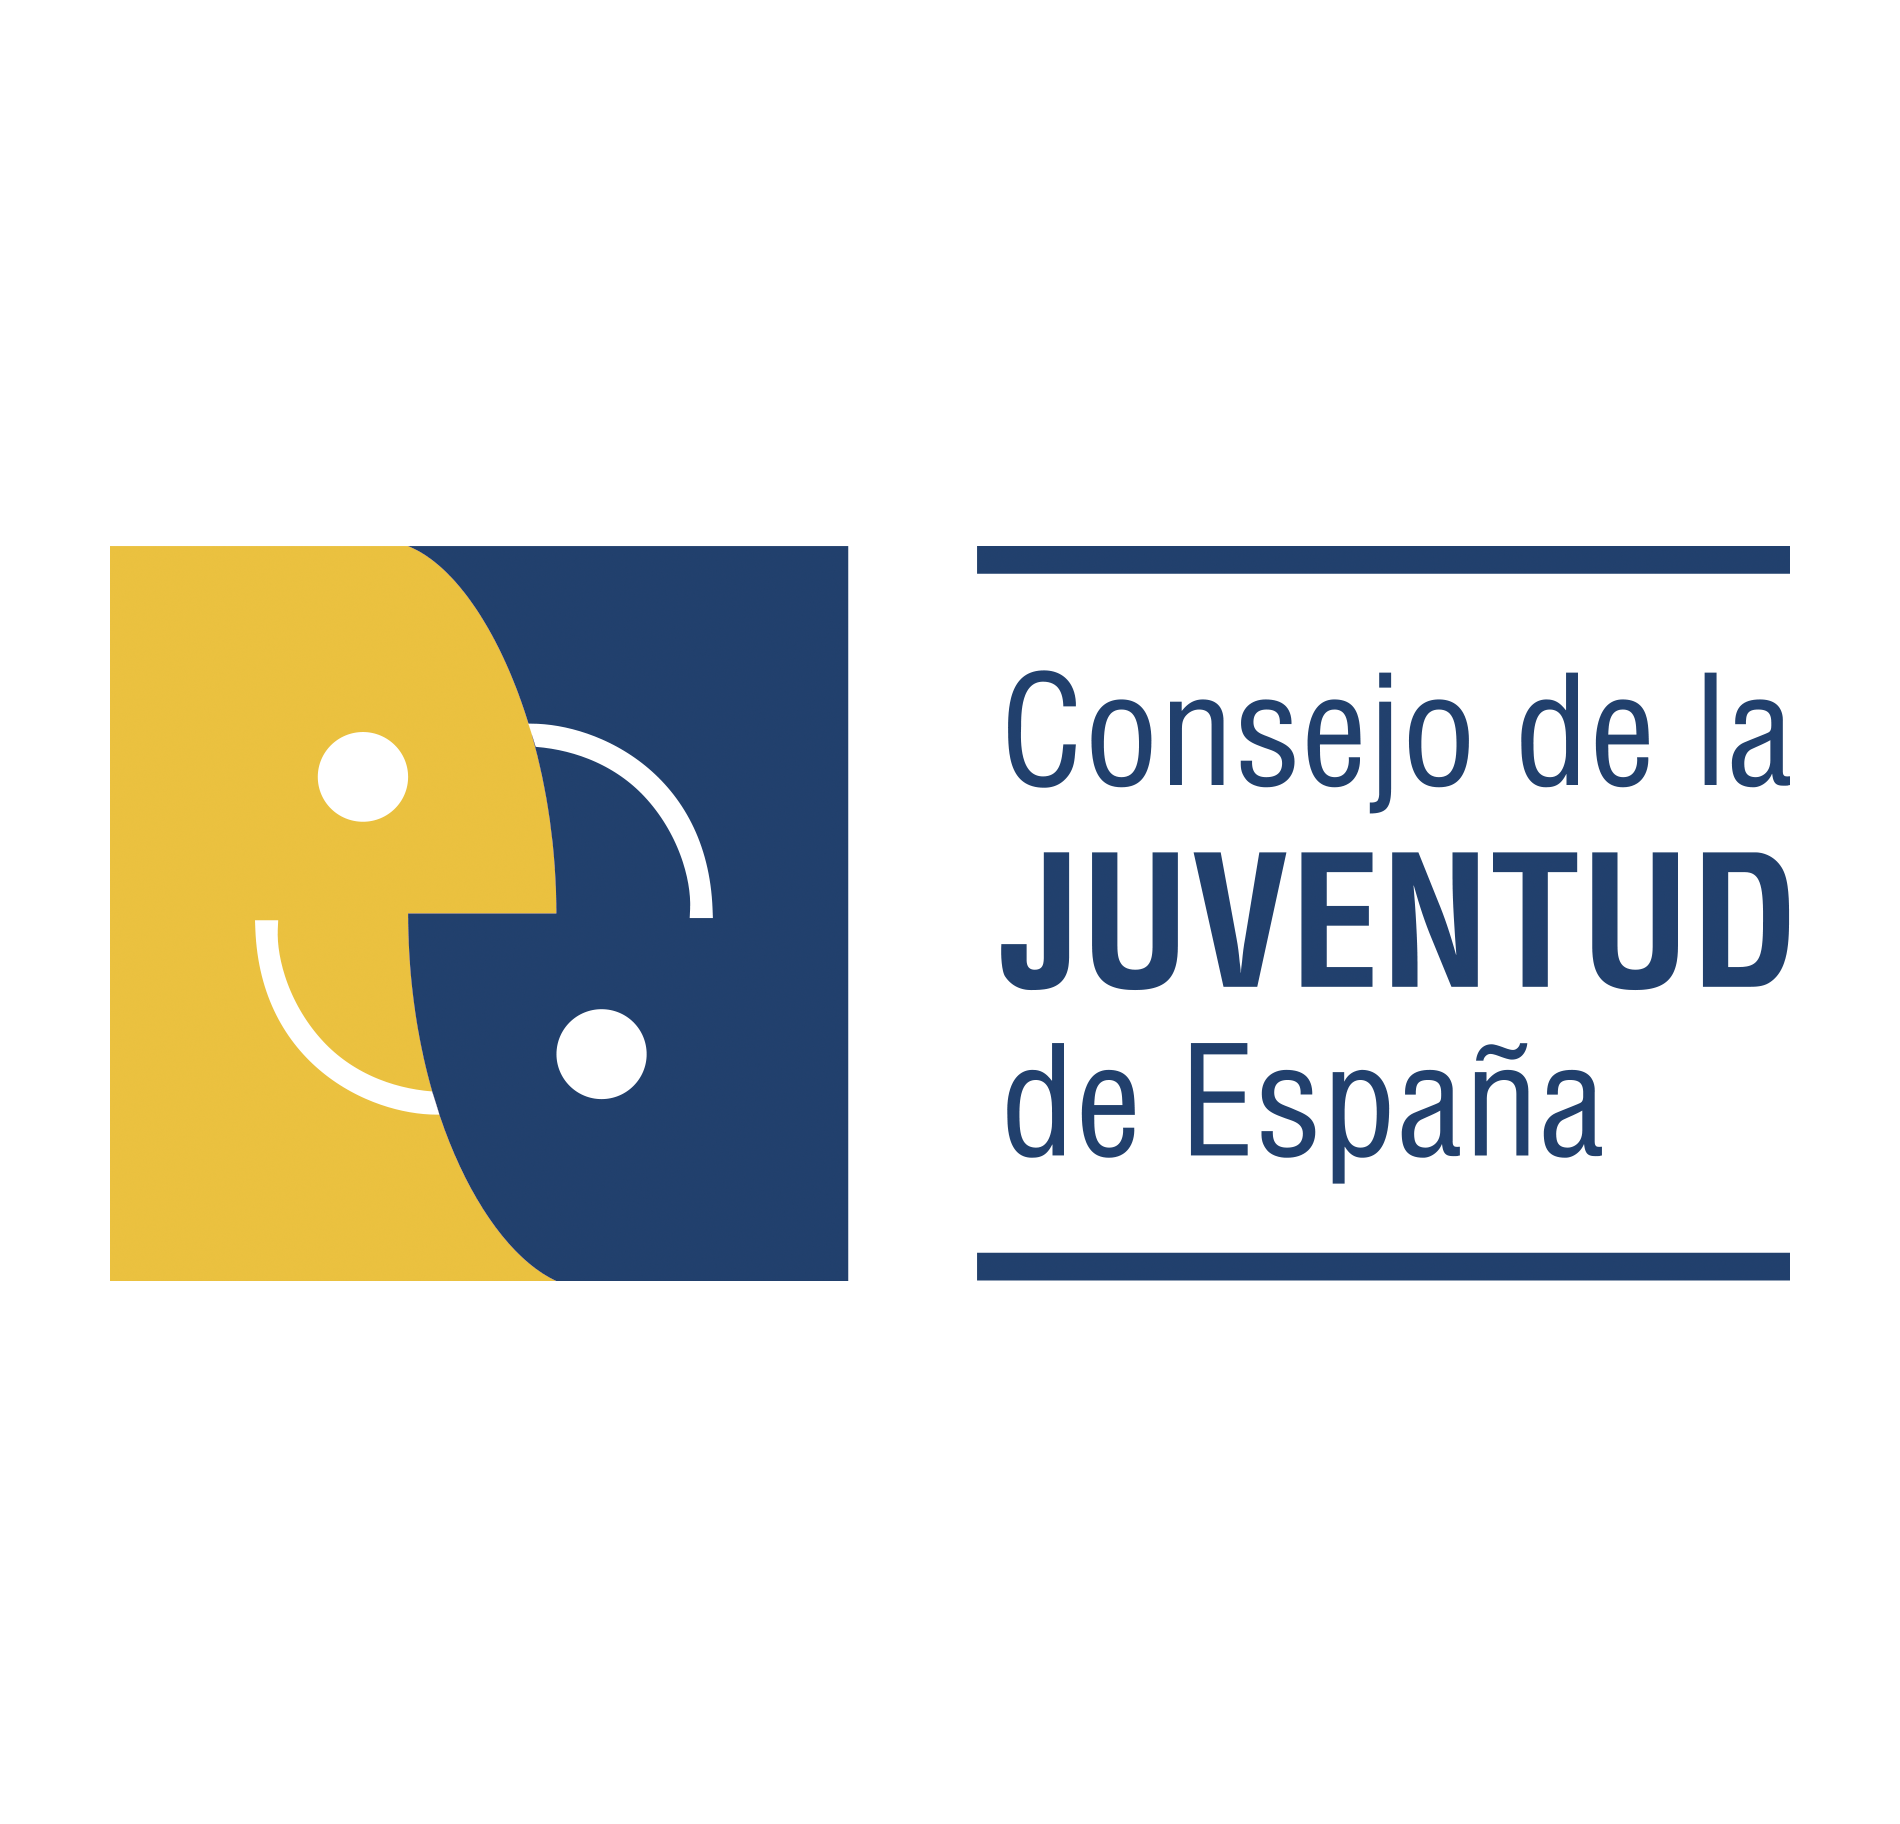 Consejo de la Juventud logo